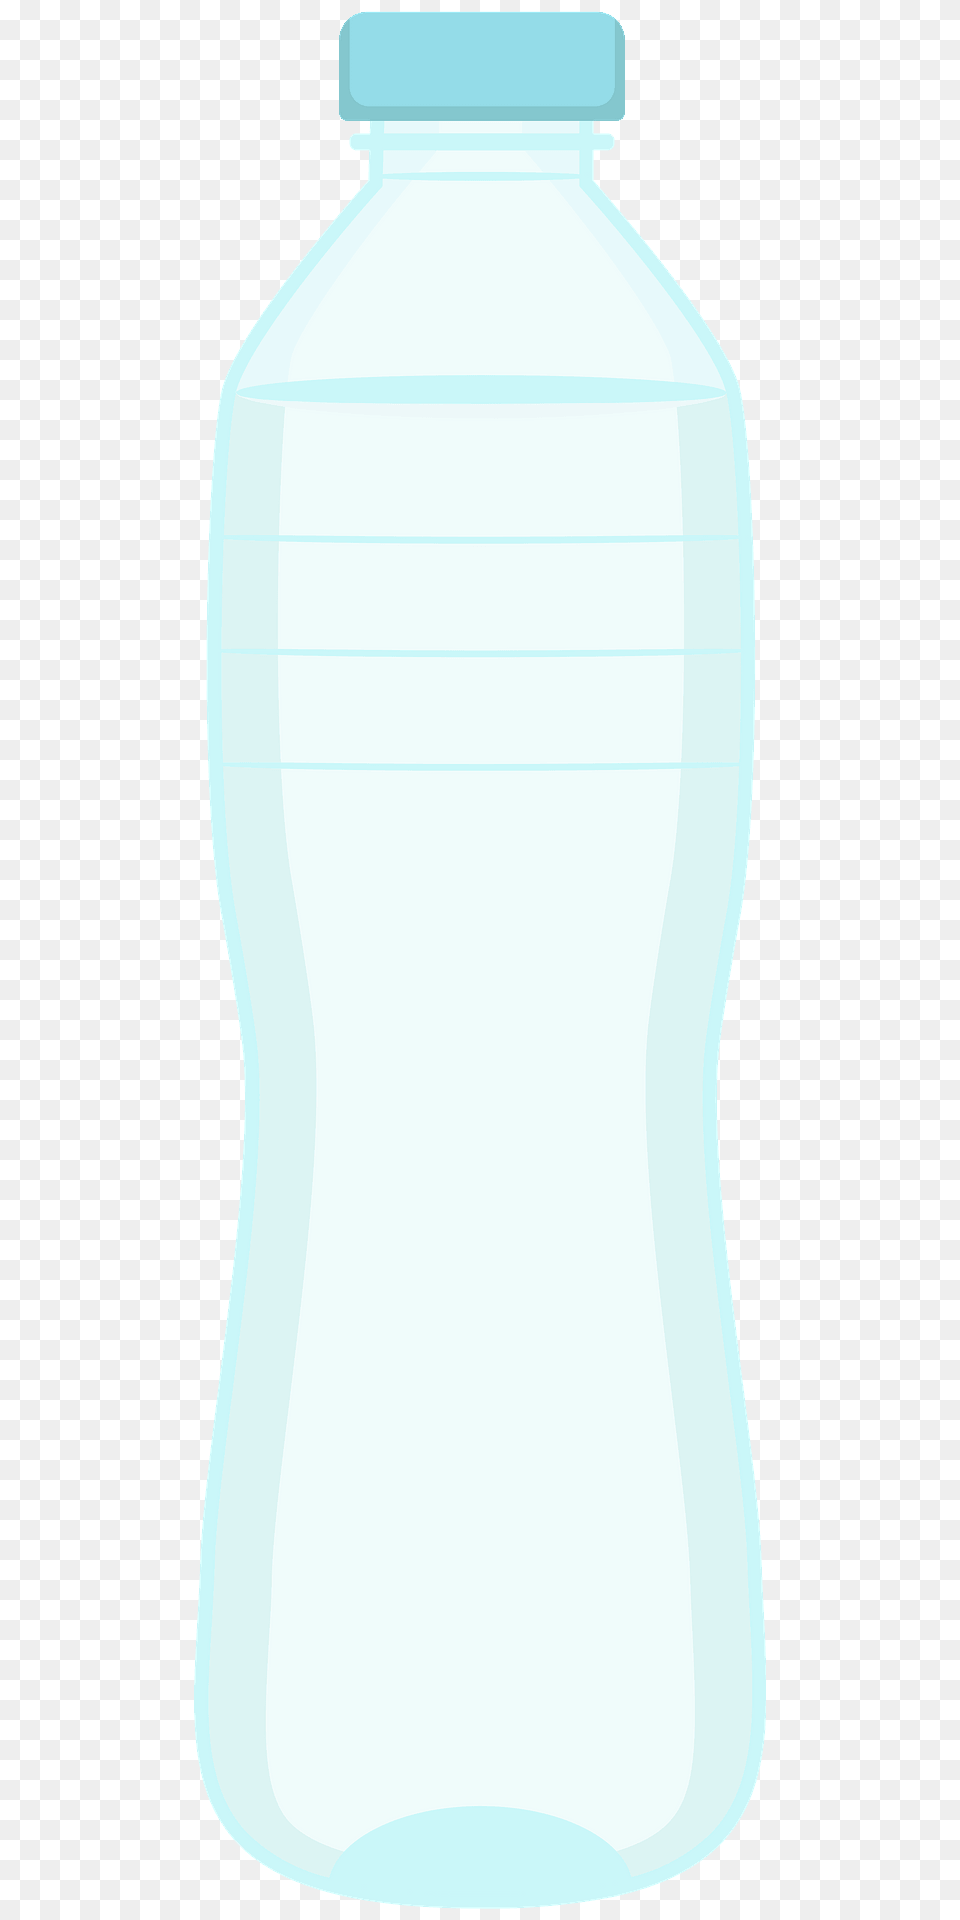 Bottle Of Water Clipart, Jar, Water Bottle, Shaker Png